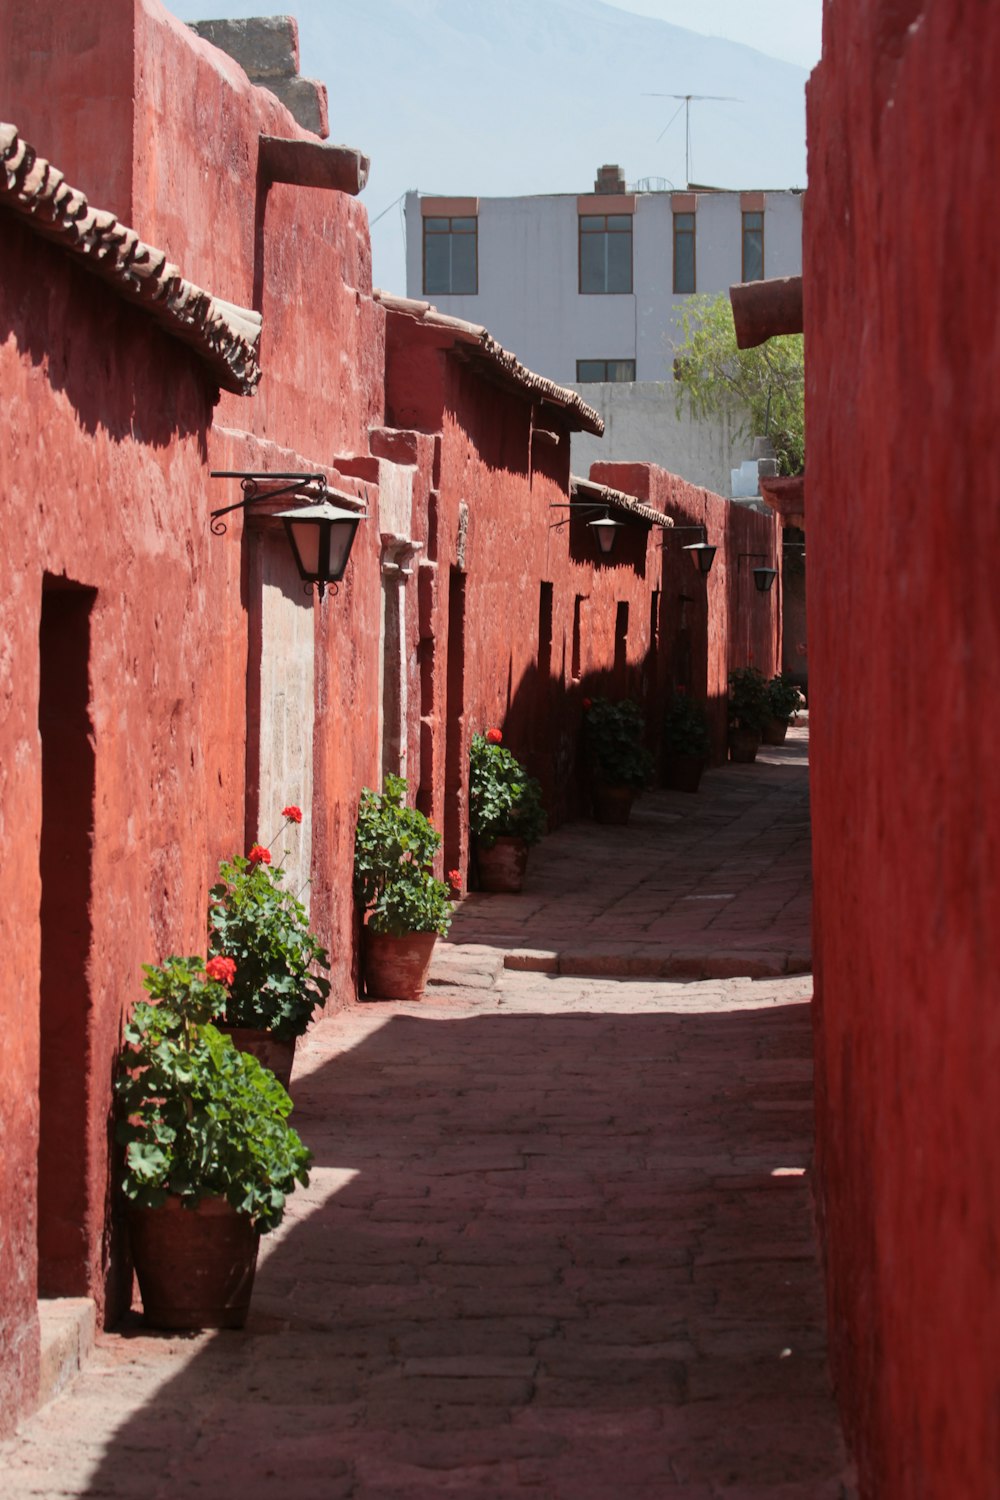 Un callejón estrecho con paredes rojas y plantas en macetas